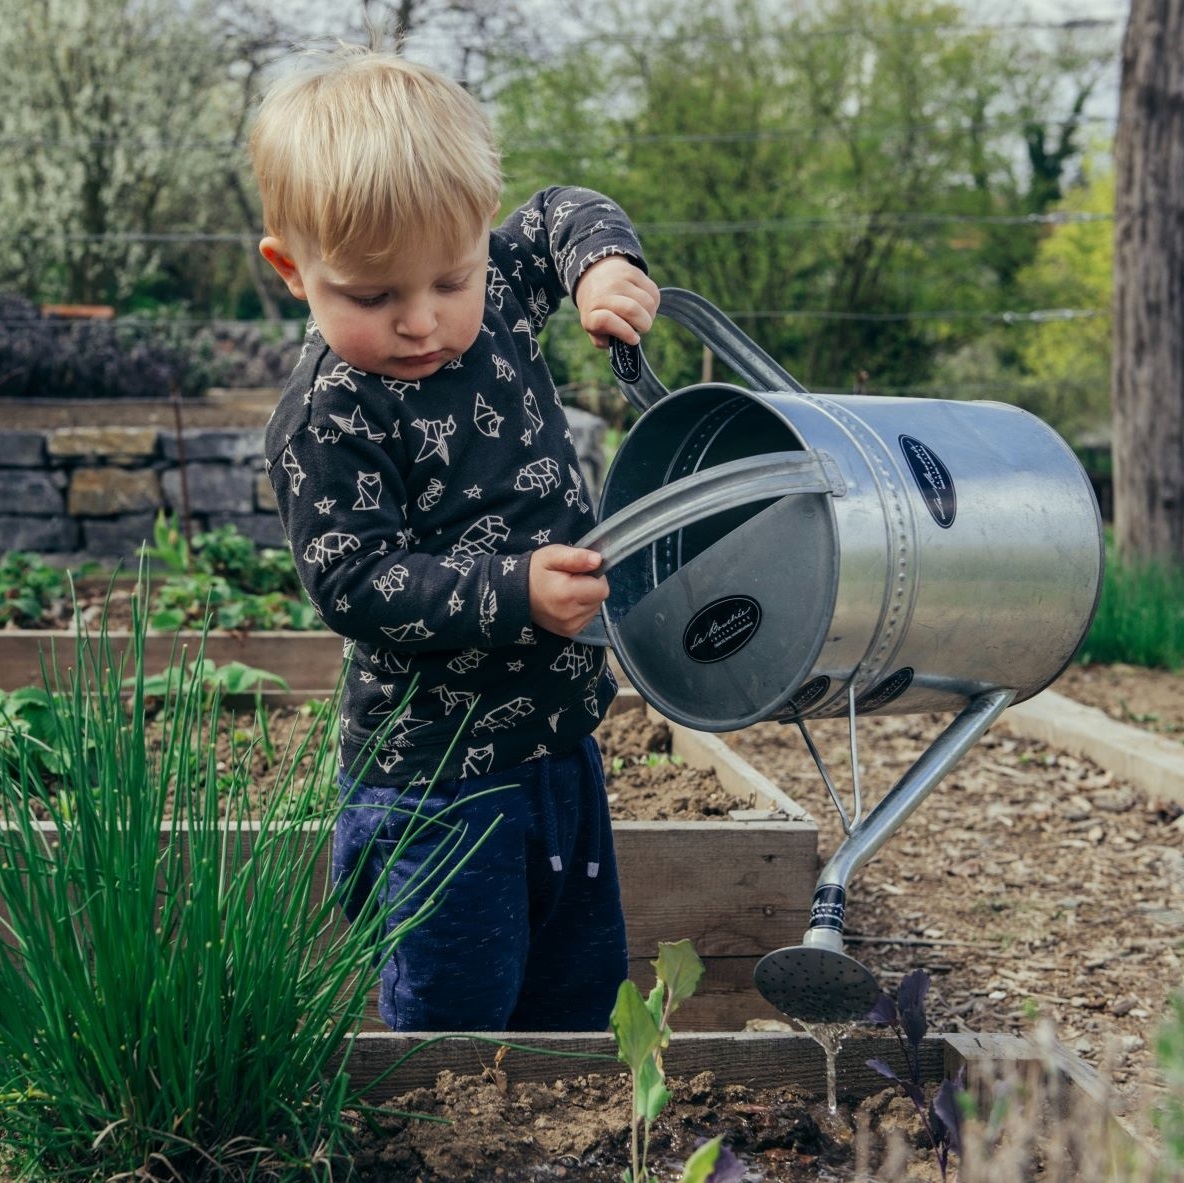 Child in garden watering plant